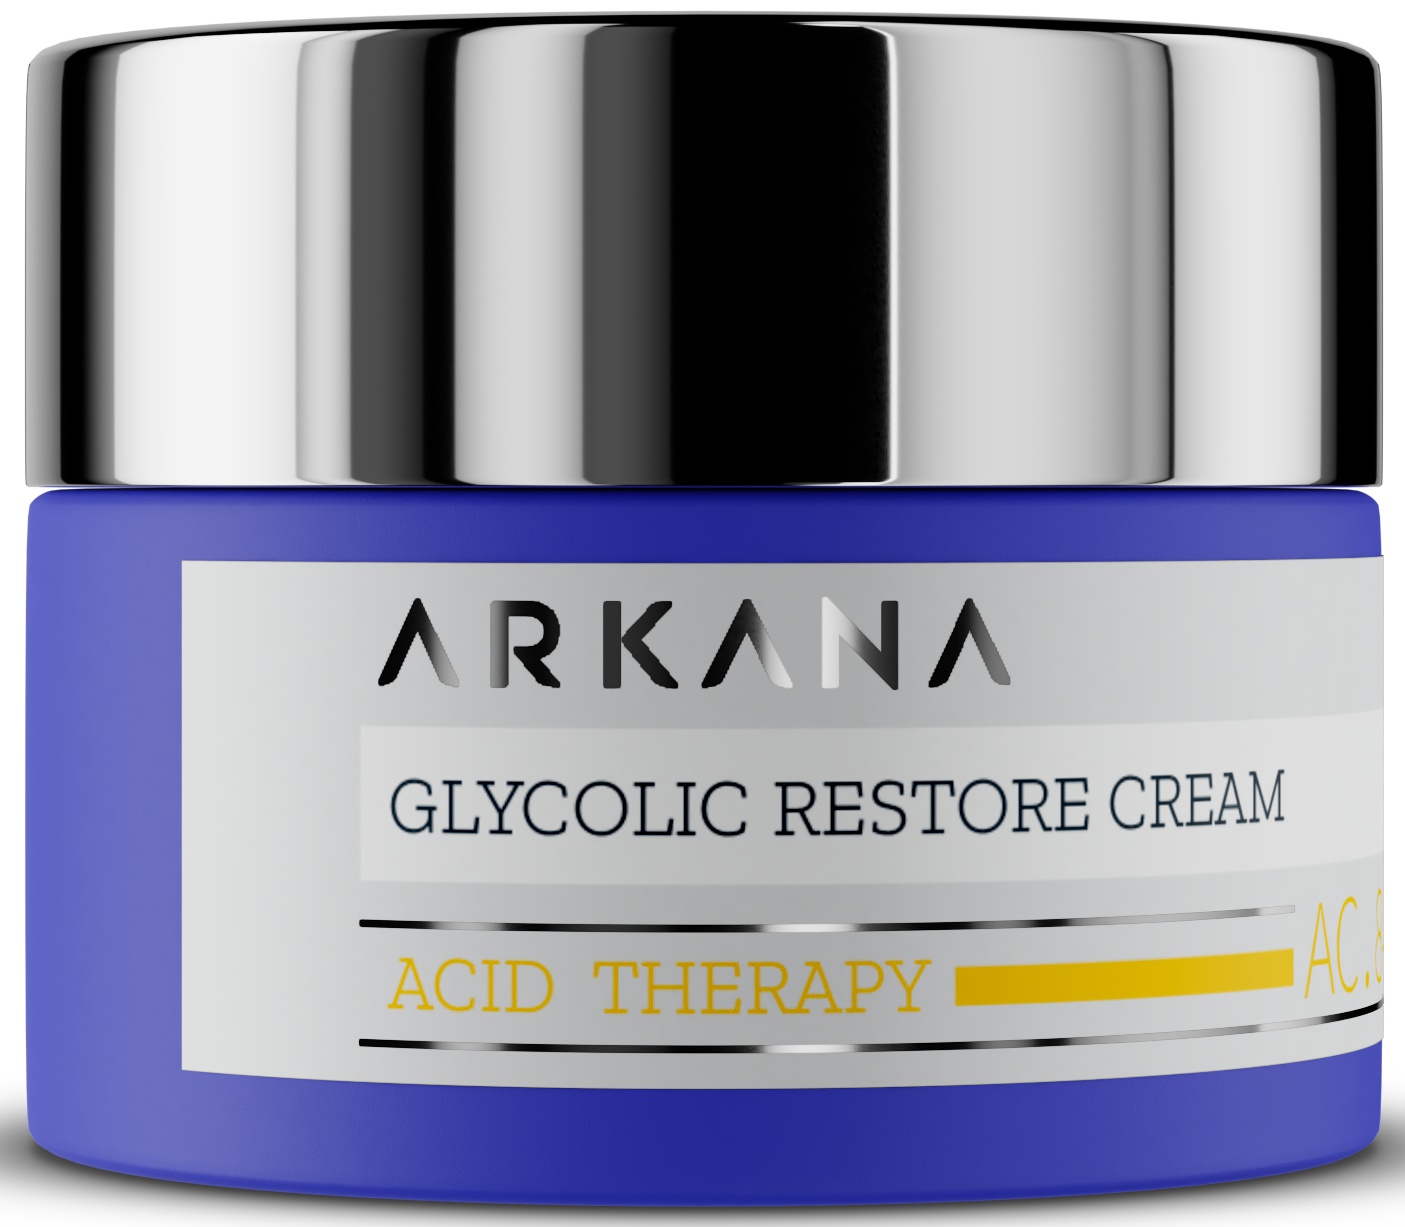 Arkana Acid Therapy, Glycolic Restore Cream